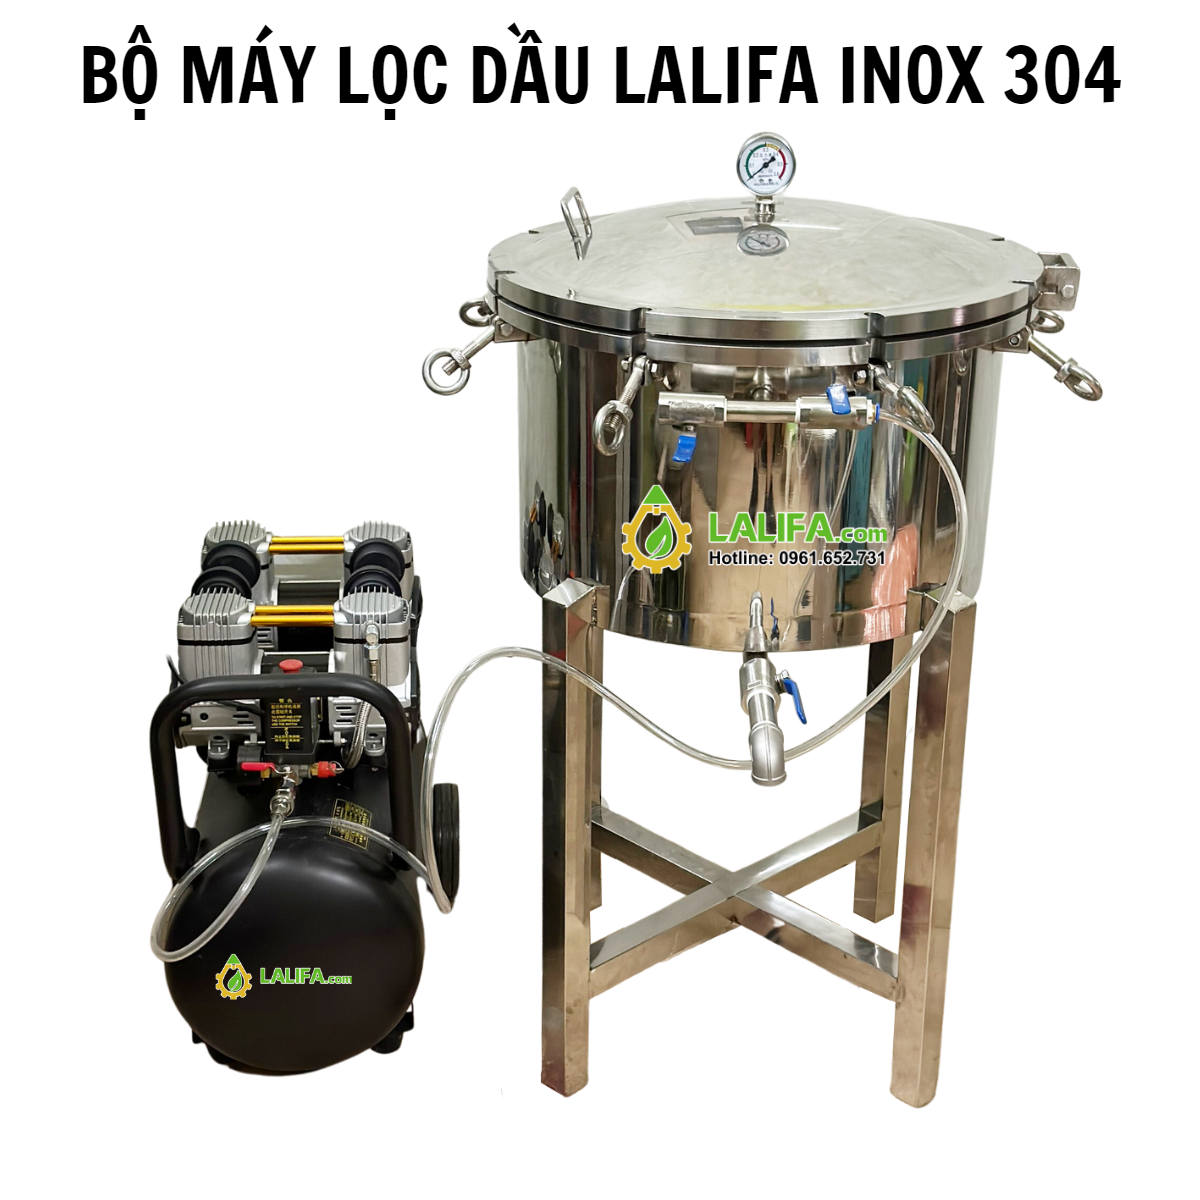 Máy lọc dầu lạc inox 1 bầu lọc Lalifa-LDI-50 công suất 15-20lit/mẻ